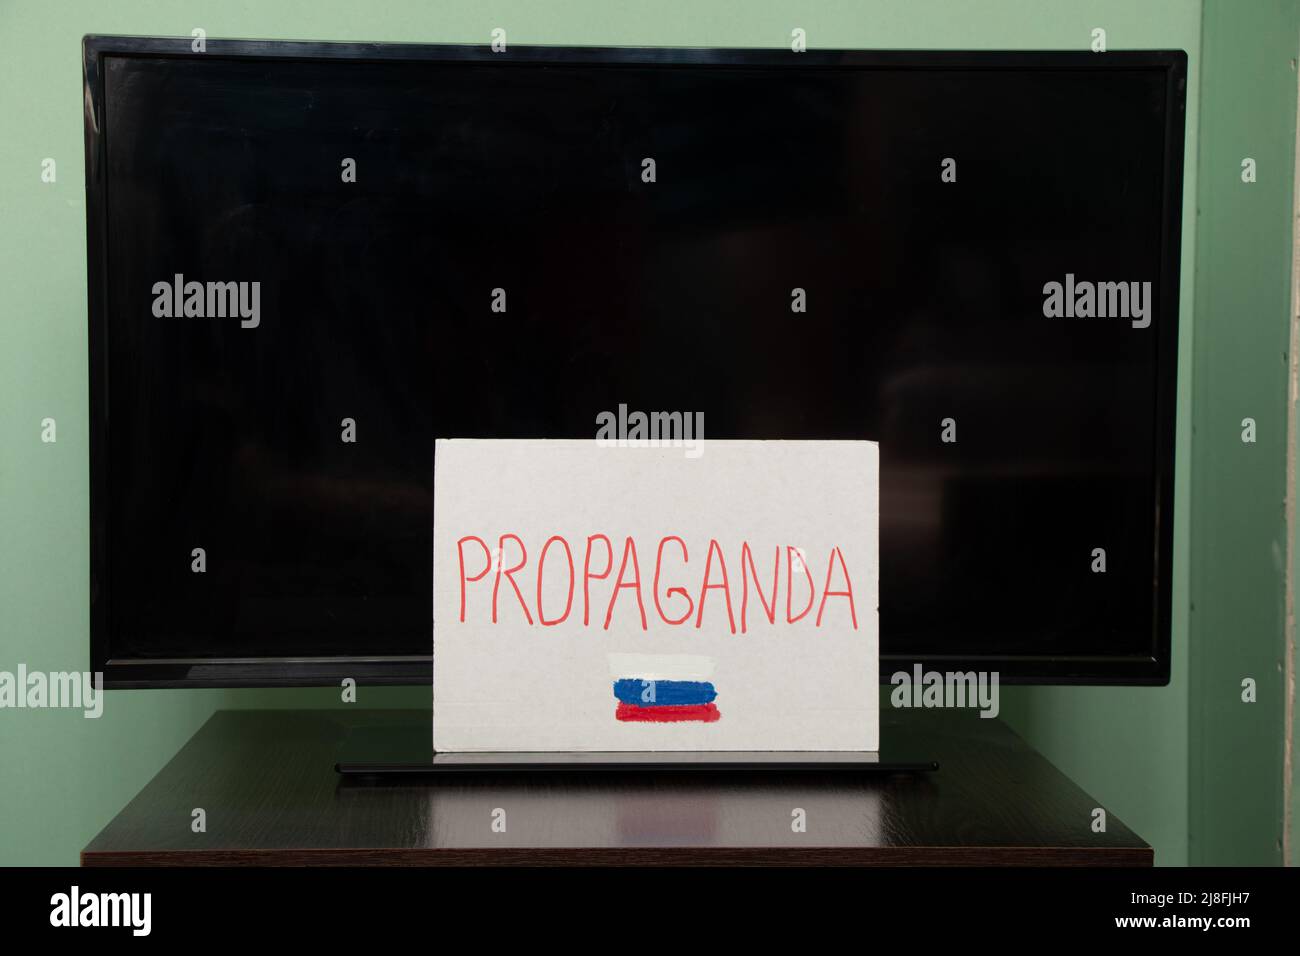 Le mot propagande et le drapeau de la Russie est écrit sur une plaque qui est accroché à la télévision, propagande russe être prudent, arrêter la guerre en Ukraine Banque D'Images